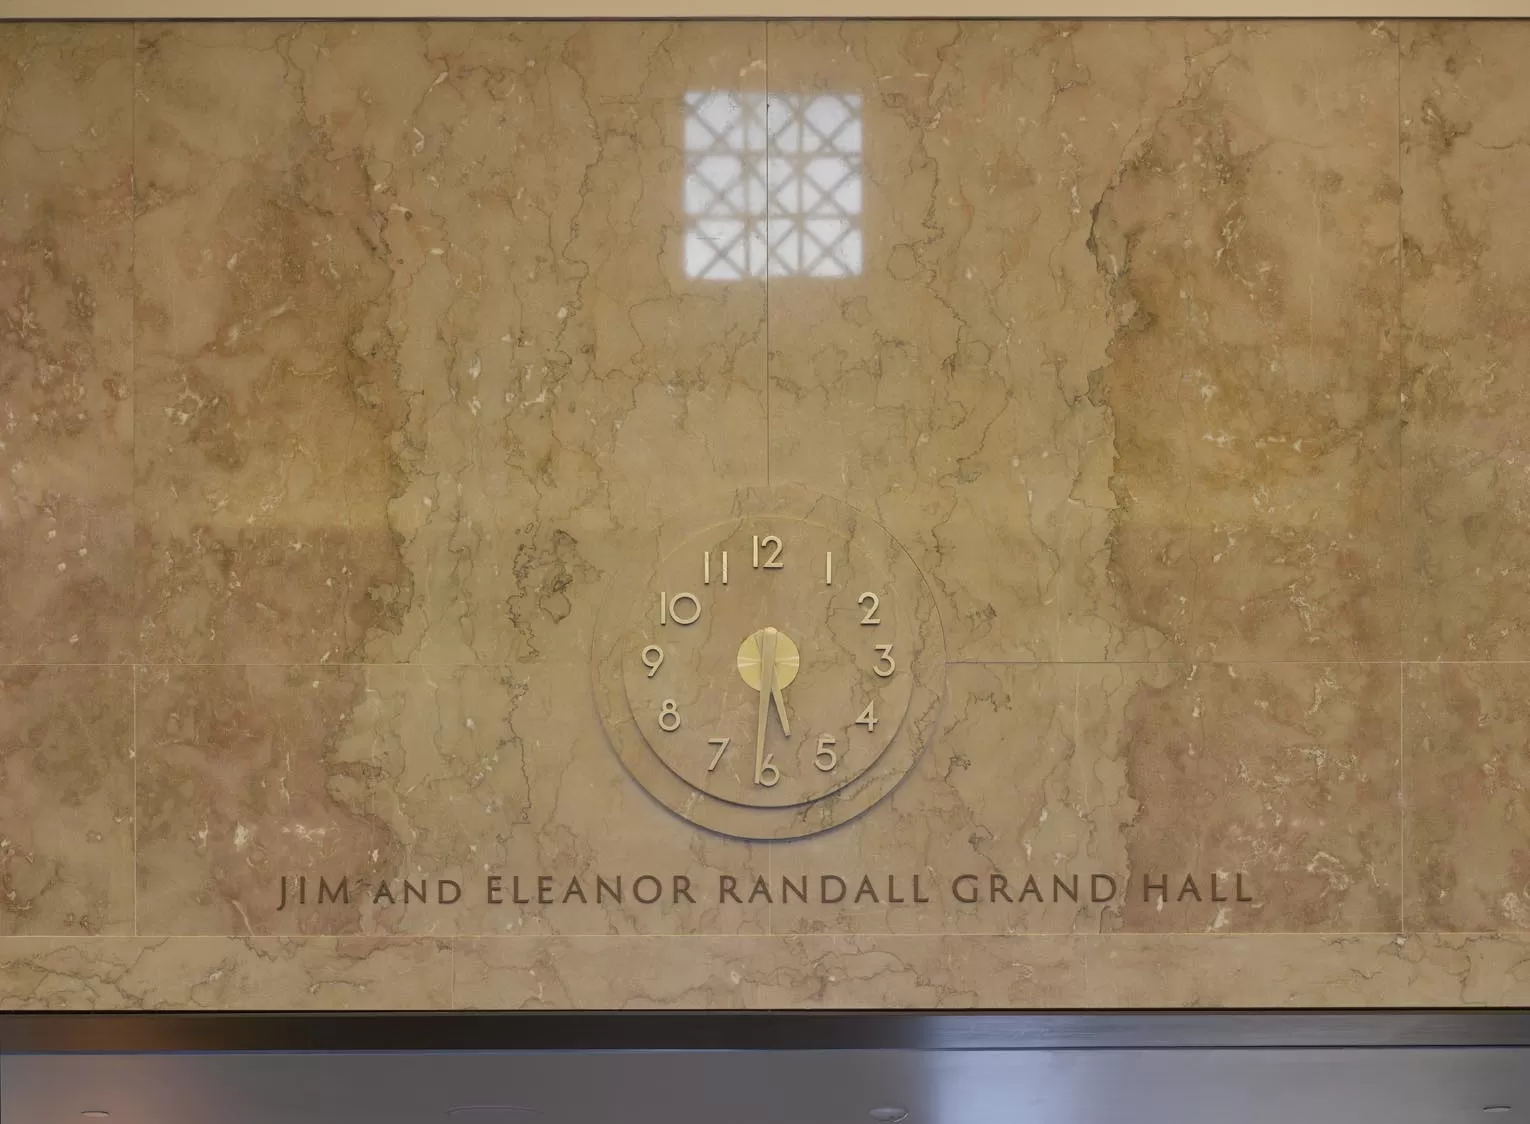 Jim and Eleanor Randall Grand Hall